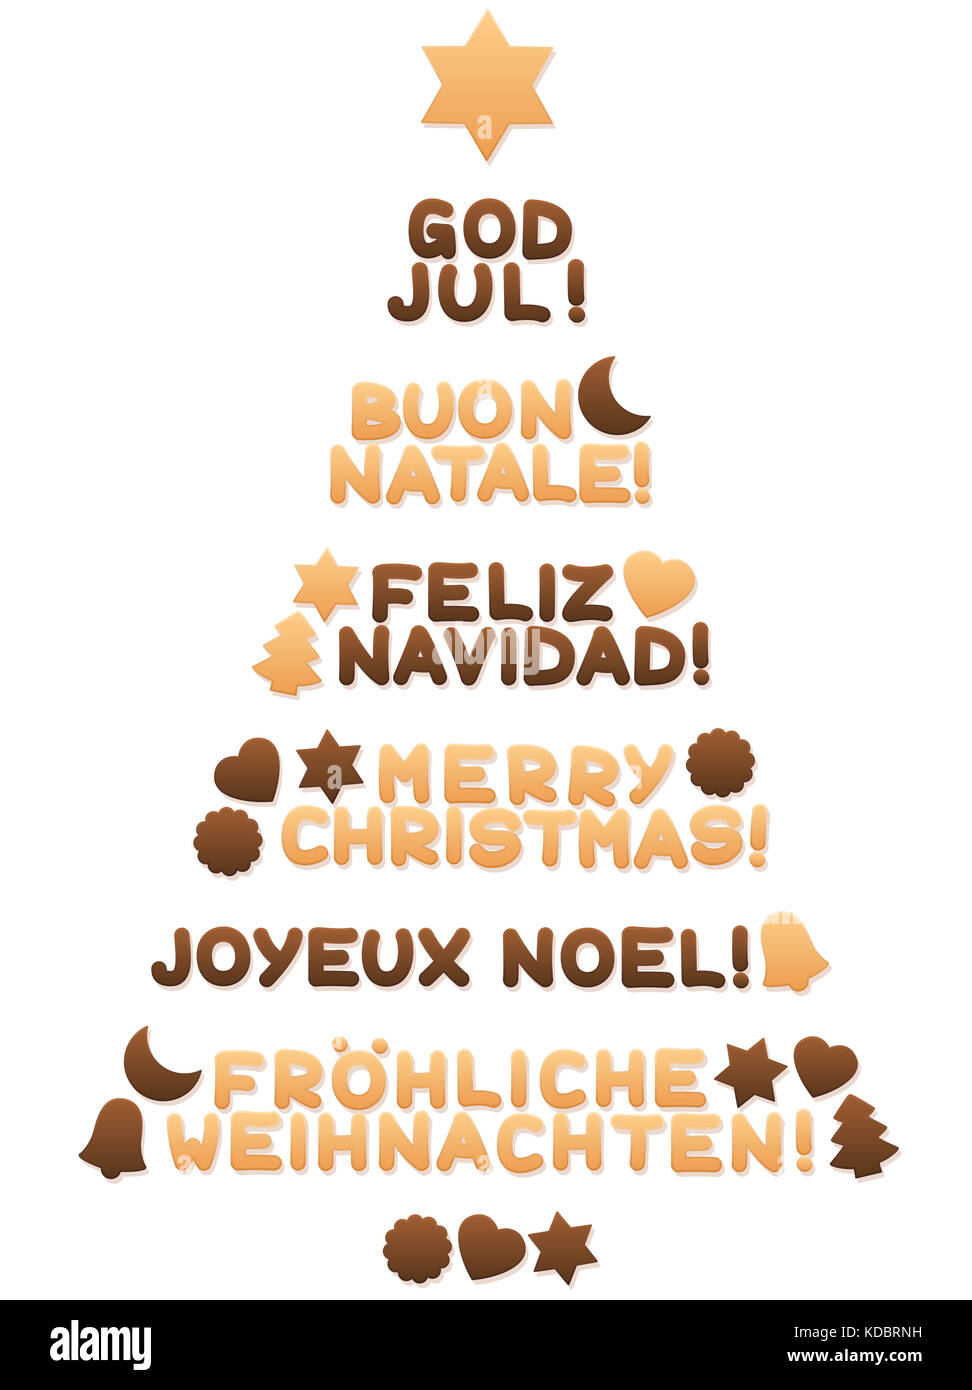 Biscotti che formano un albero di natale e desiderano BUON NATALE in spagnolo, inglese, svedese, italiano, francese e tedesco parole. Foto Stock